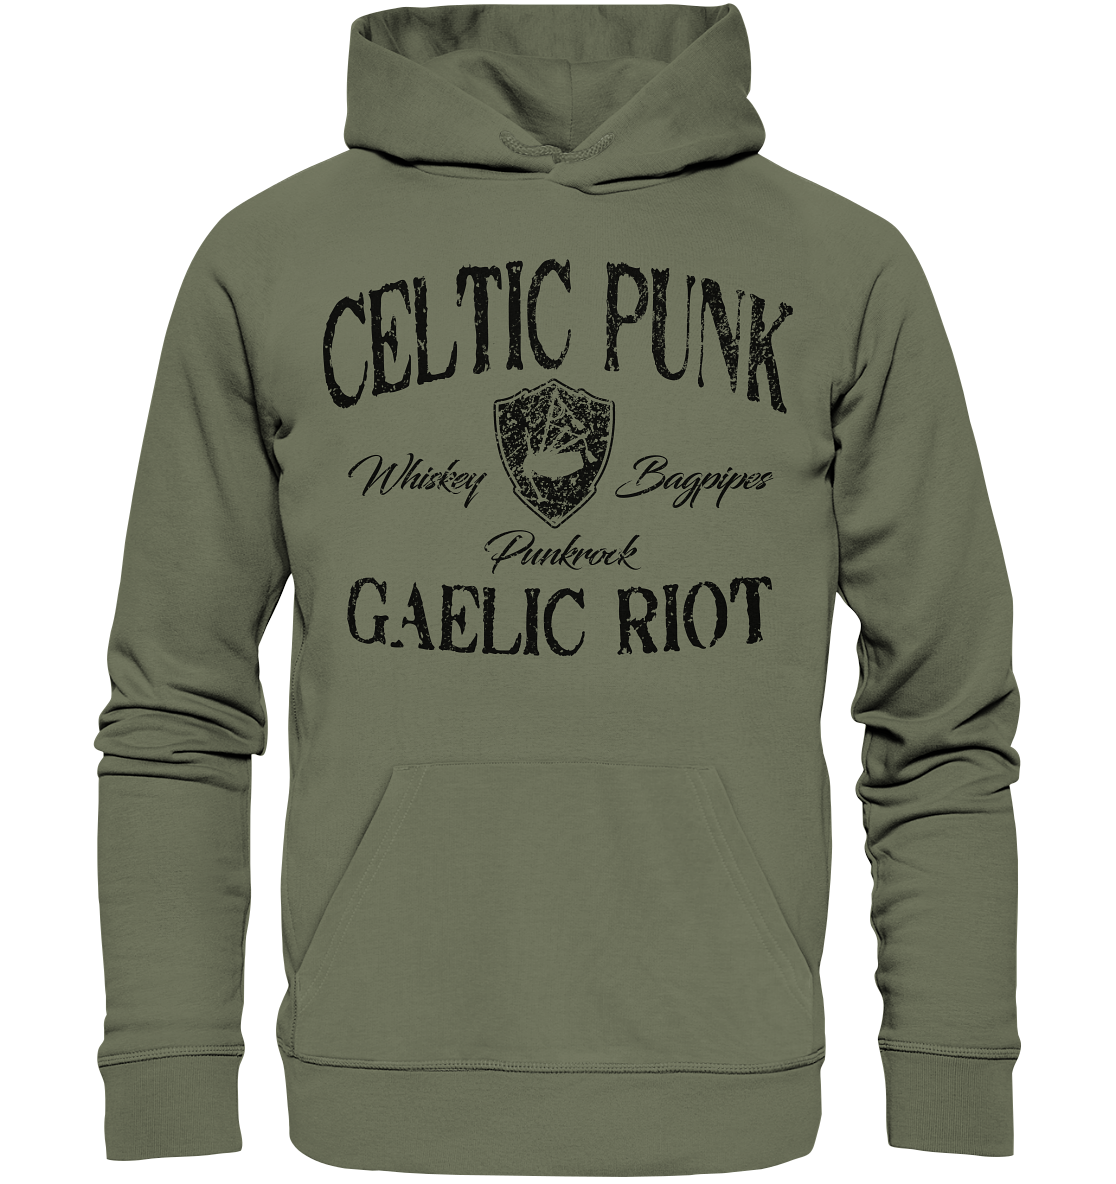 Celtic Punk "Gaelic Riot" - Premium Unisex Hoodie